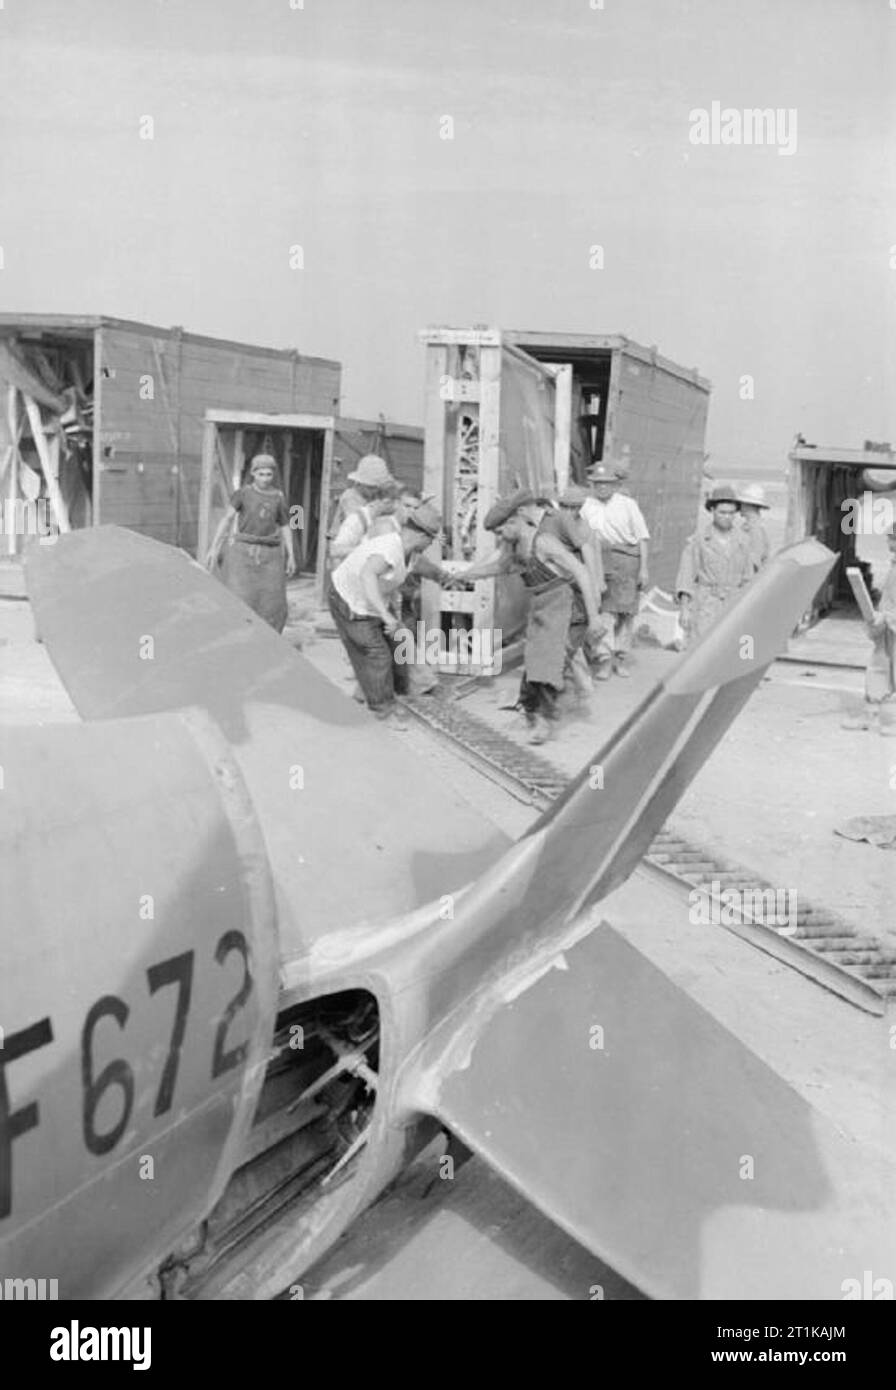 Operaciones de la Real Fuerza Aérea en Oriente Medio y Norte de África, 1939-1943. Los trabajadores civiles manejan el ala de un Supermarine Spitfire Mark VIII fuera de su caja antes del montaje del avión (JF672, visto en primer plano) por la Unidad de Mantenimiento Nº 145 en el Aeropuerto de CazÃ, Casablanca, Marruecos. La mayoría de los civiles empleados en 145 MU eran refugiados españoles que huyeron al norte de África después de la victoria del general Franco en la Guerra Civil. Fueron encarcelados por los franceses de Vichy, pero liberados por los aliados en noviembre de 1942. Foto de stock